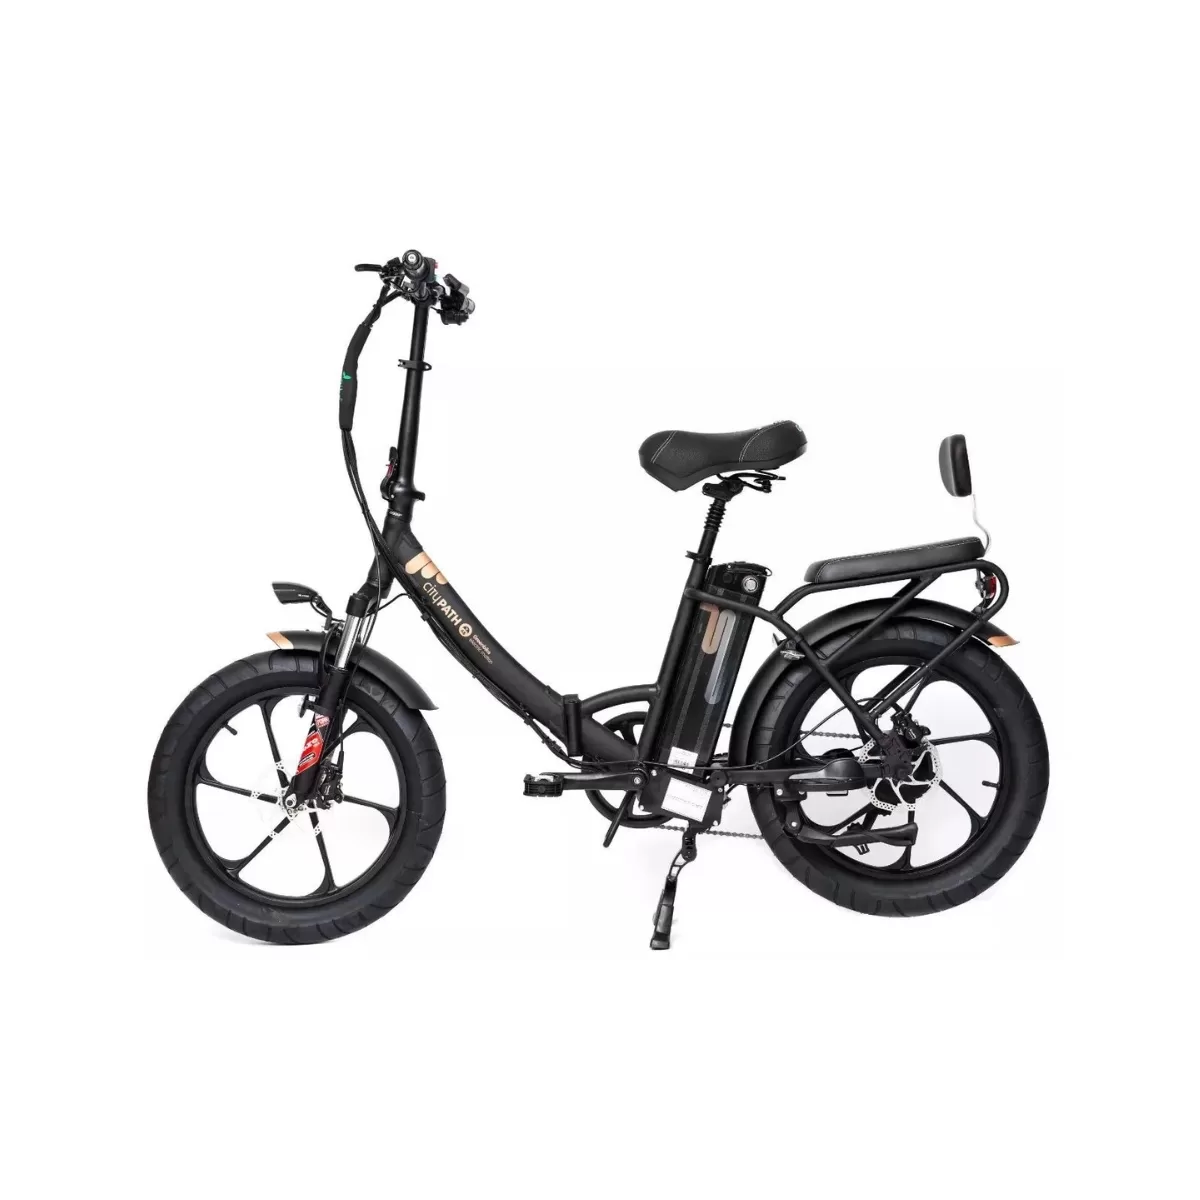 אופניים חשמליים גרין בייק סיטי פרמיום – GreenBike City Premium